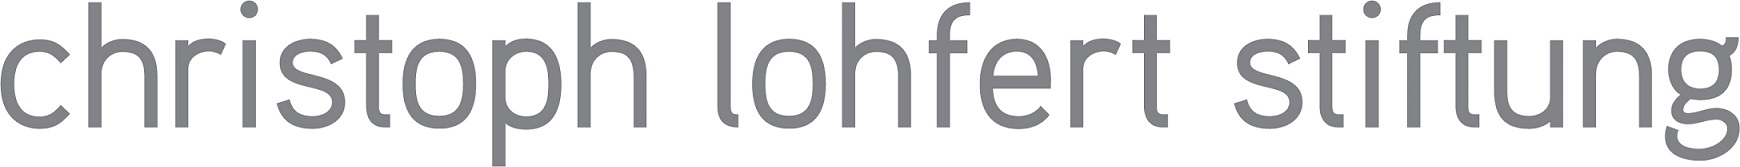 Christoph Lohfert Stiftung Logo